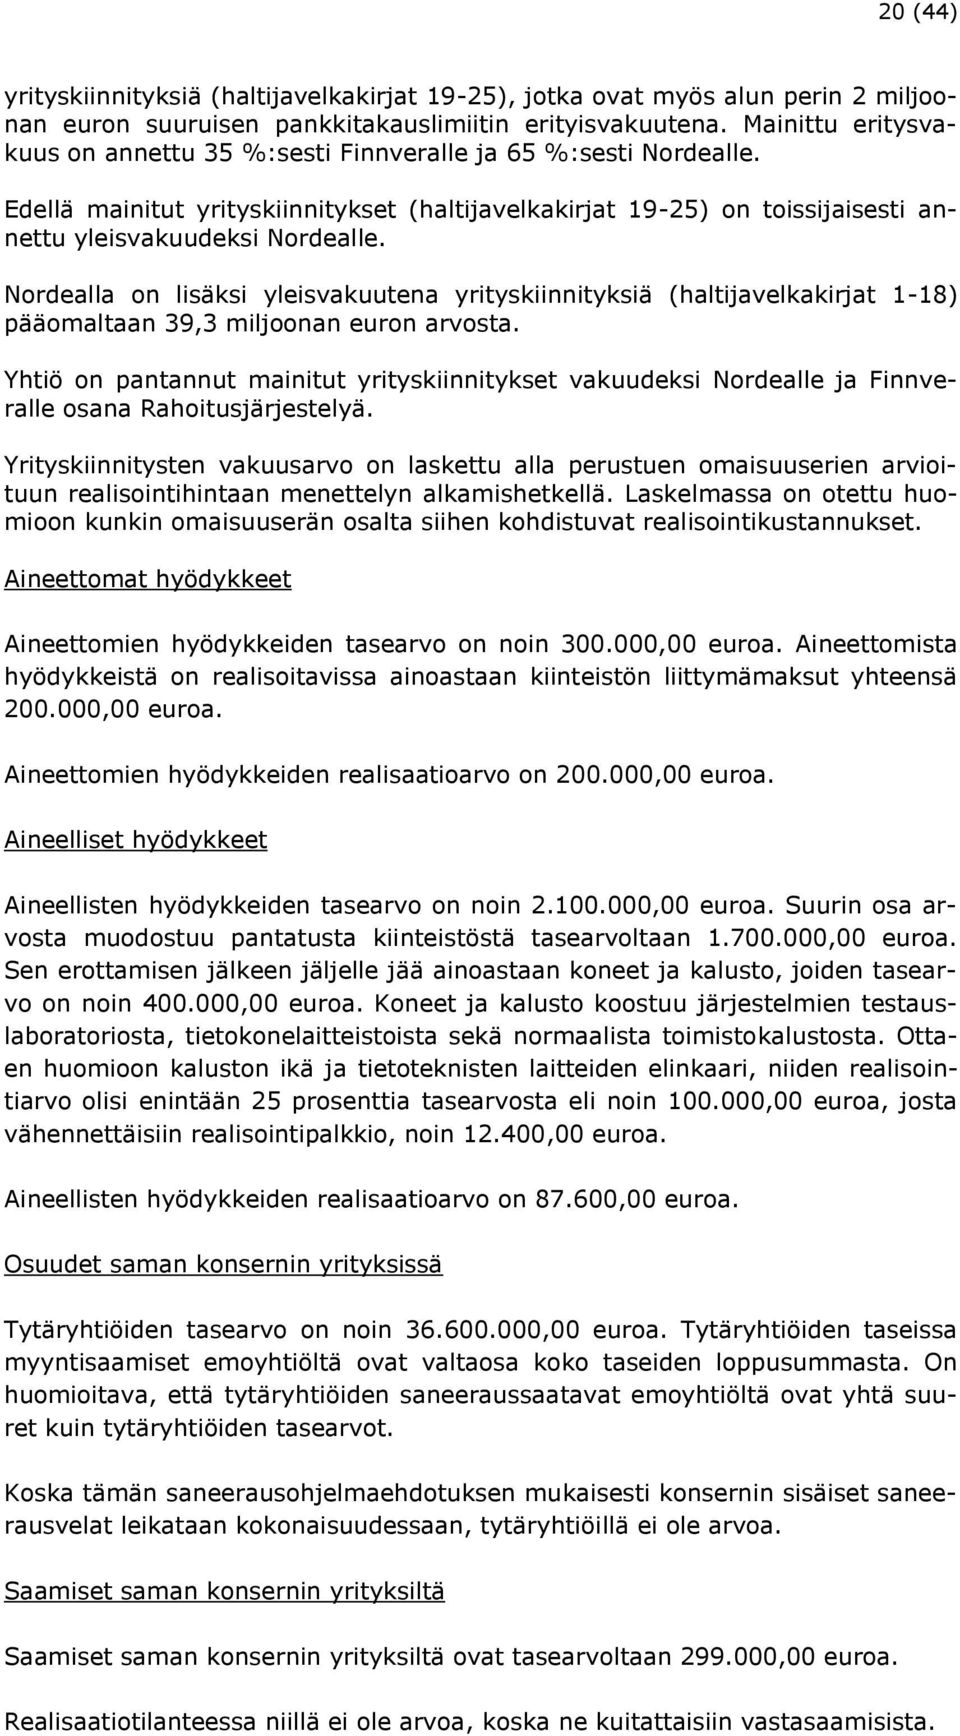 Nordealla on lisäksi yleisvakuutena yrityskiinnityksiä (haltijavelkakirjat 1-18) pääomaltaan 39,3 miljoonan euron arvosta.